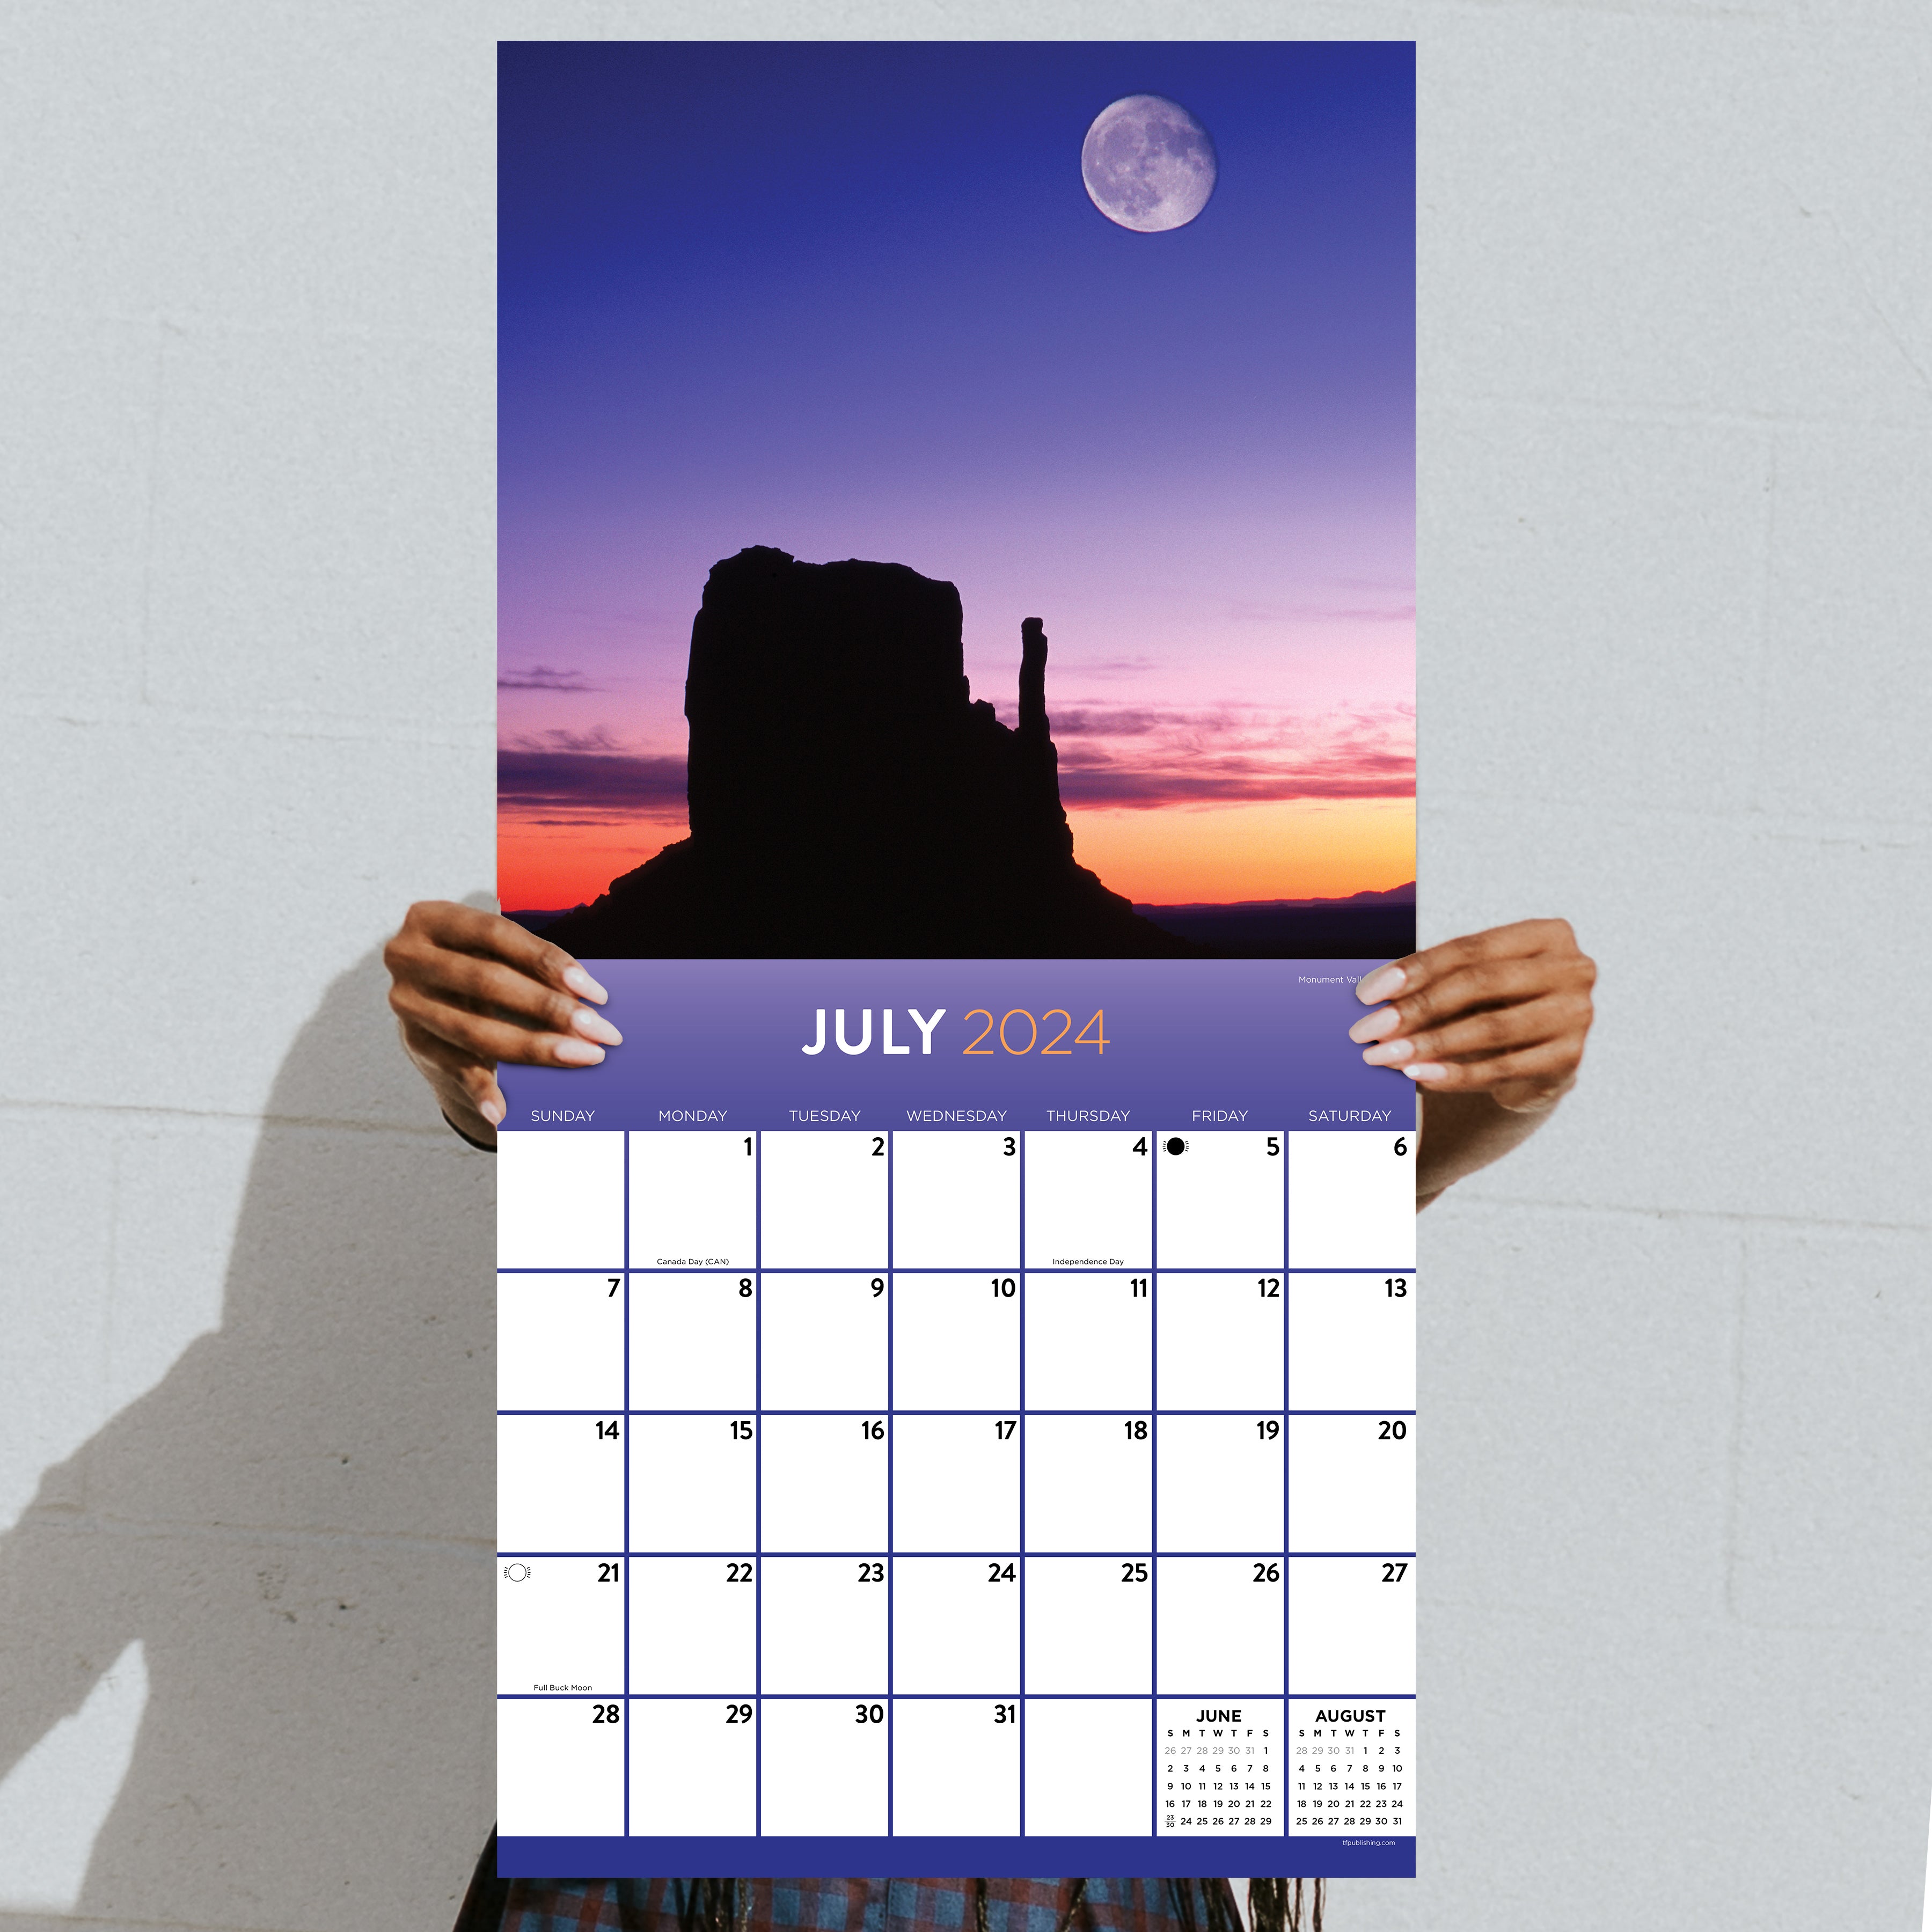 2024 Moons - Square Wall Calendar